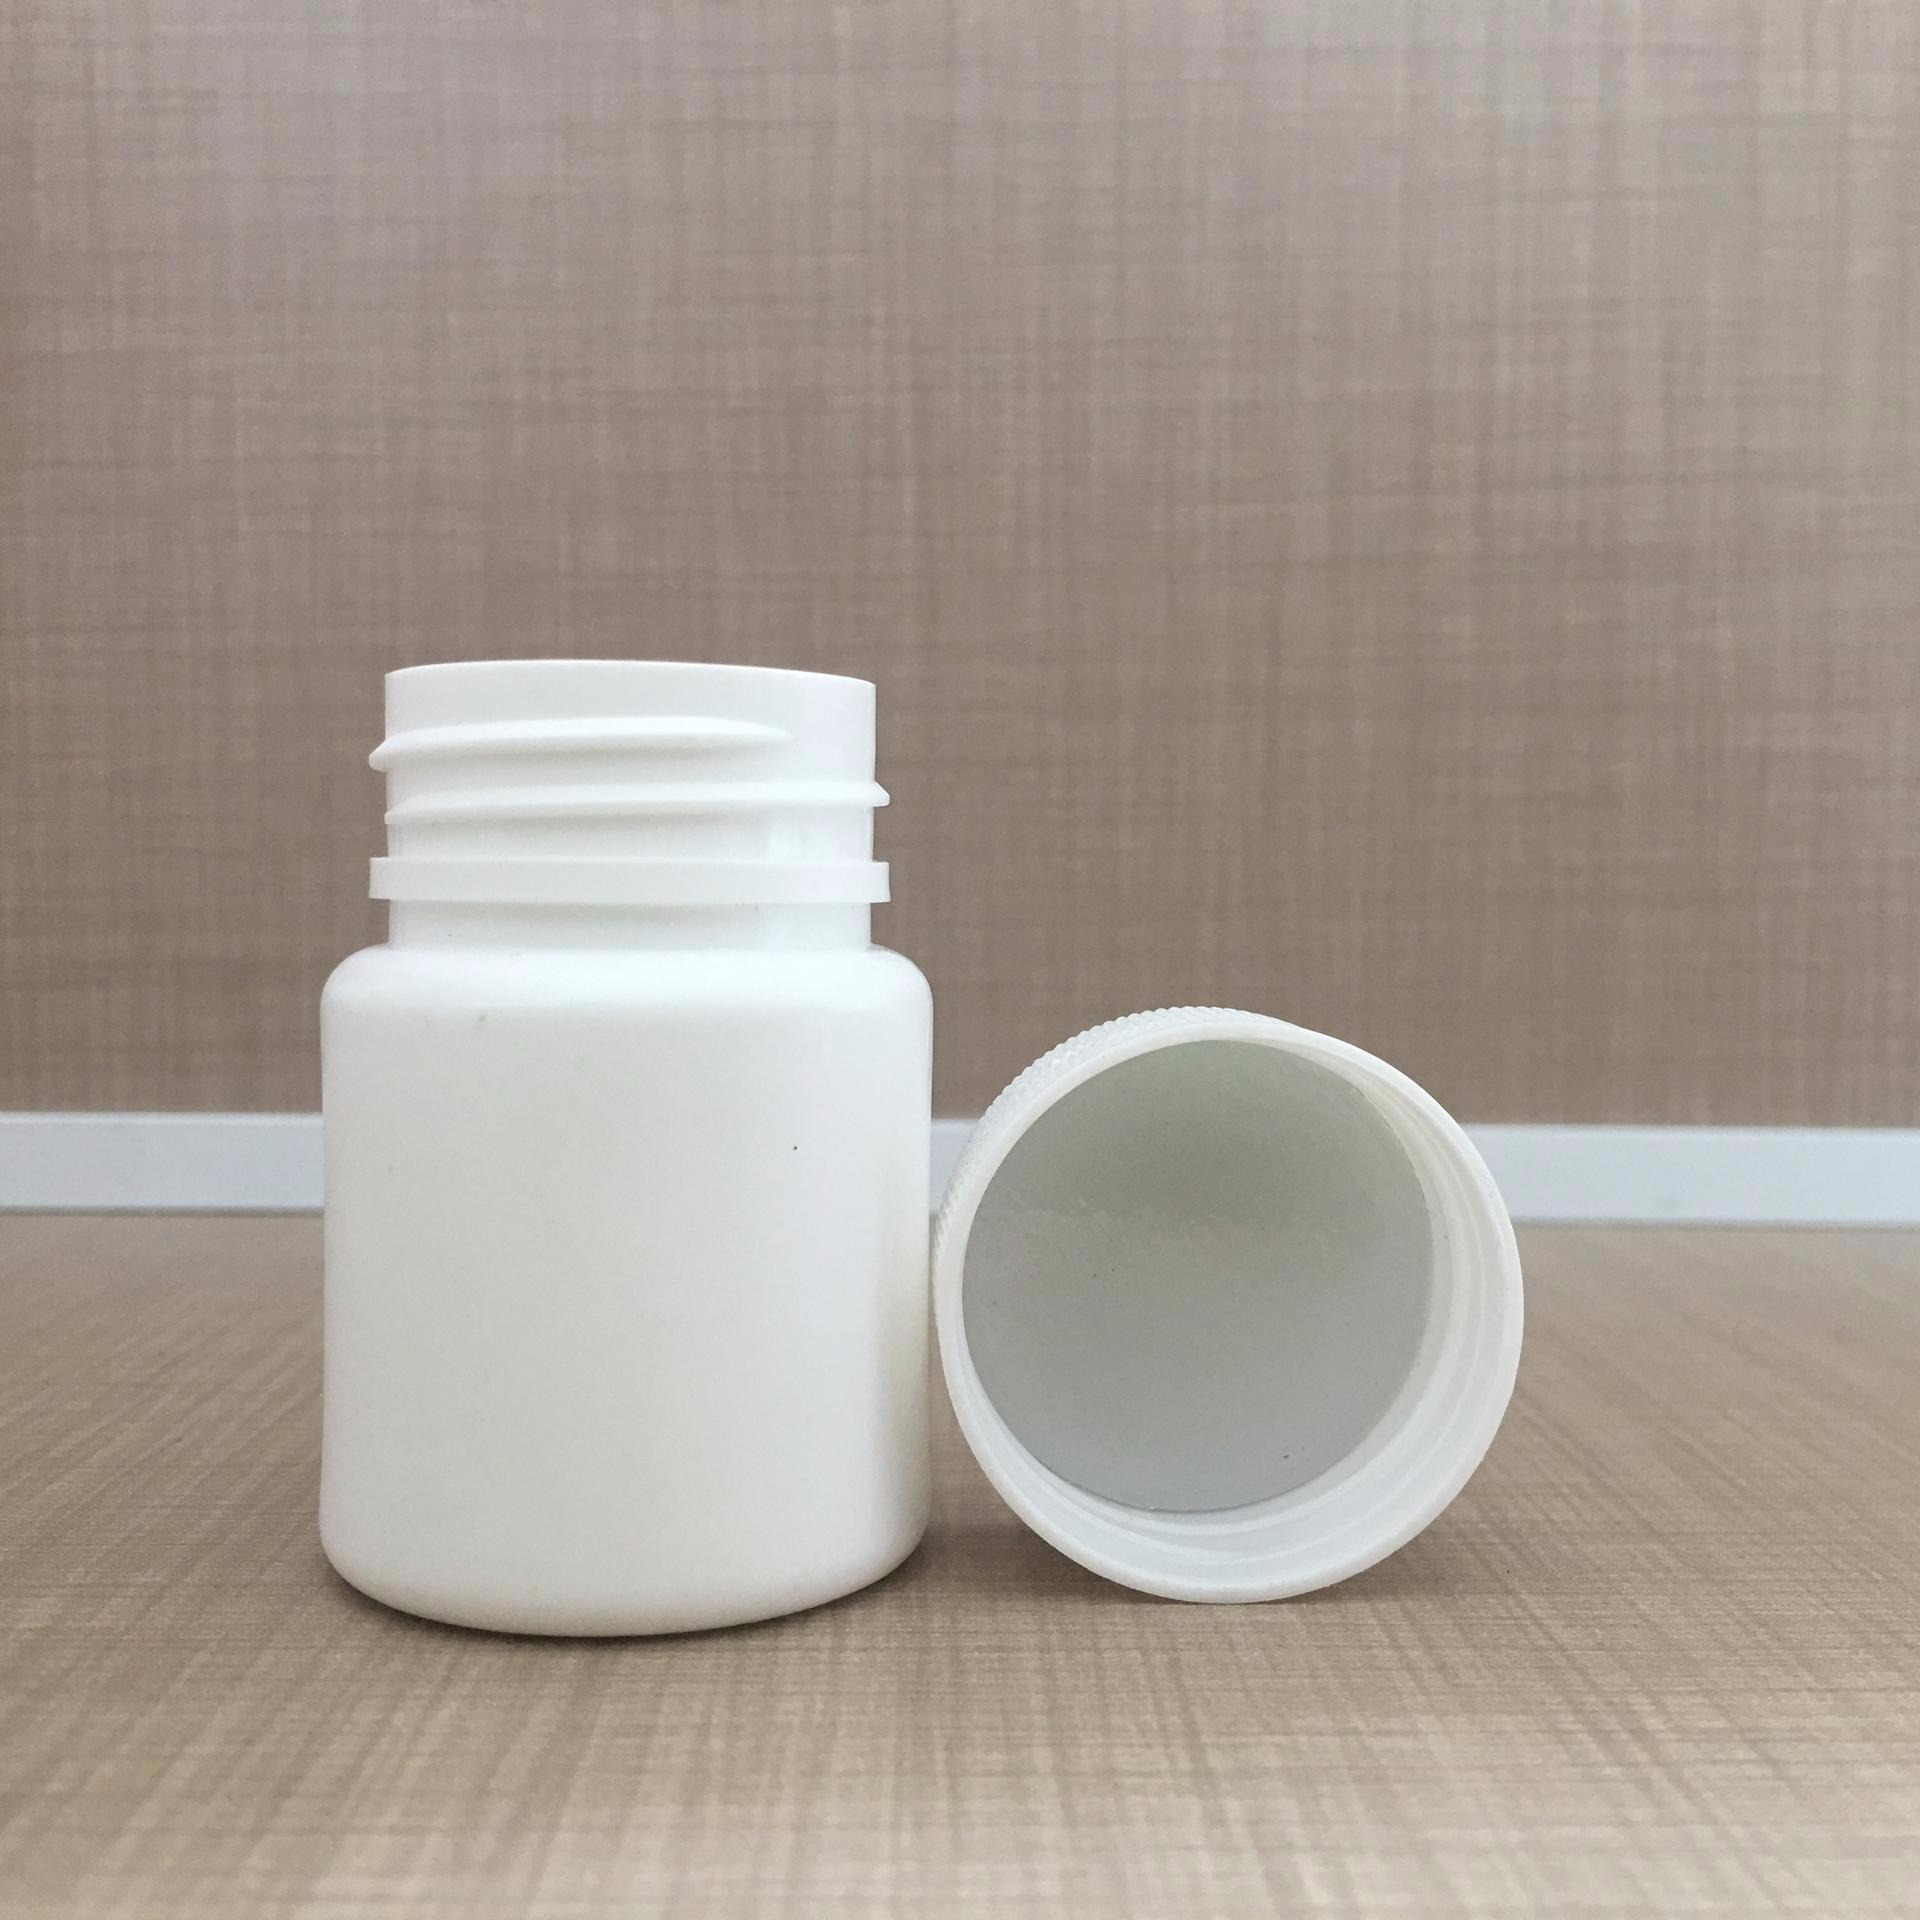 沧州红星厂家供应 150g固体塑料瓶 小塑料瓶  白色塑料瓶  胶囊片剂分装瓶